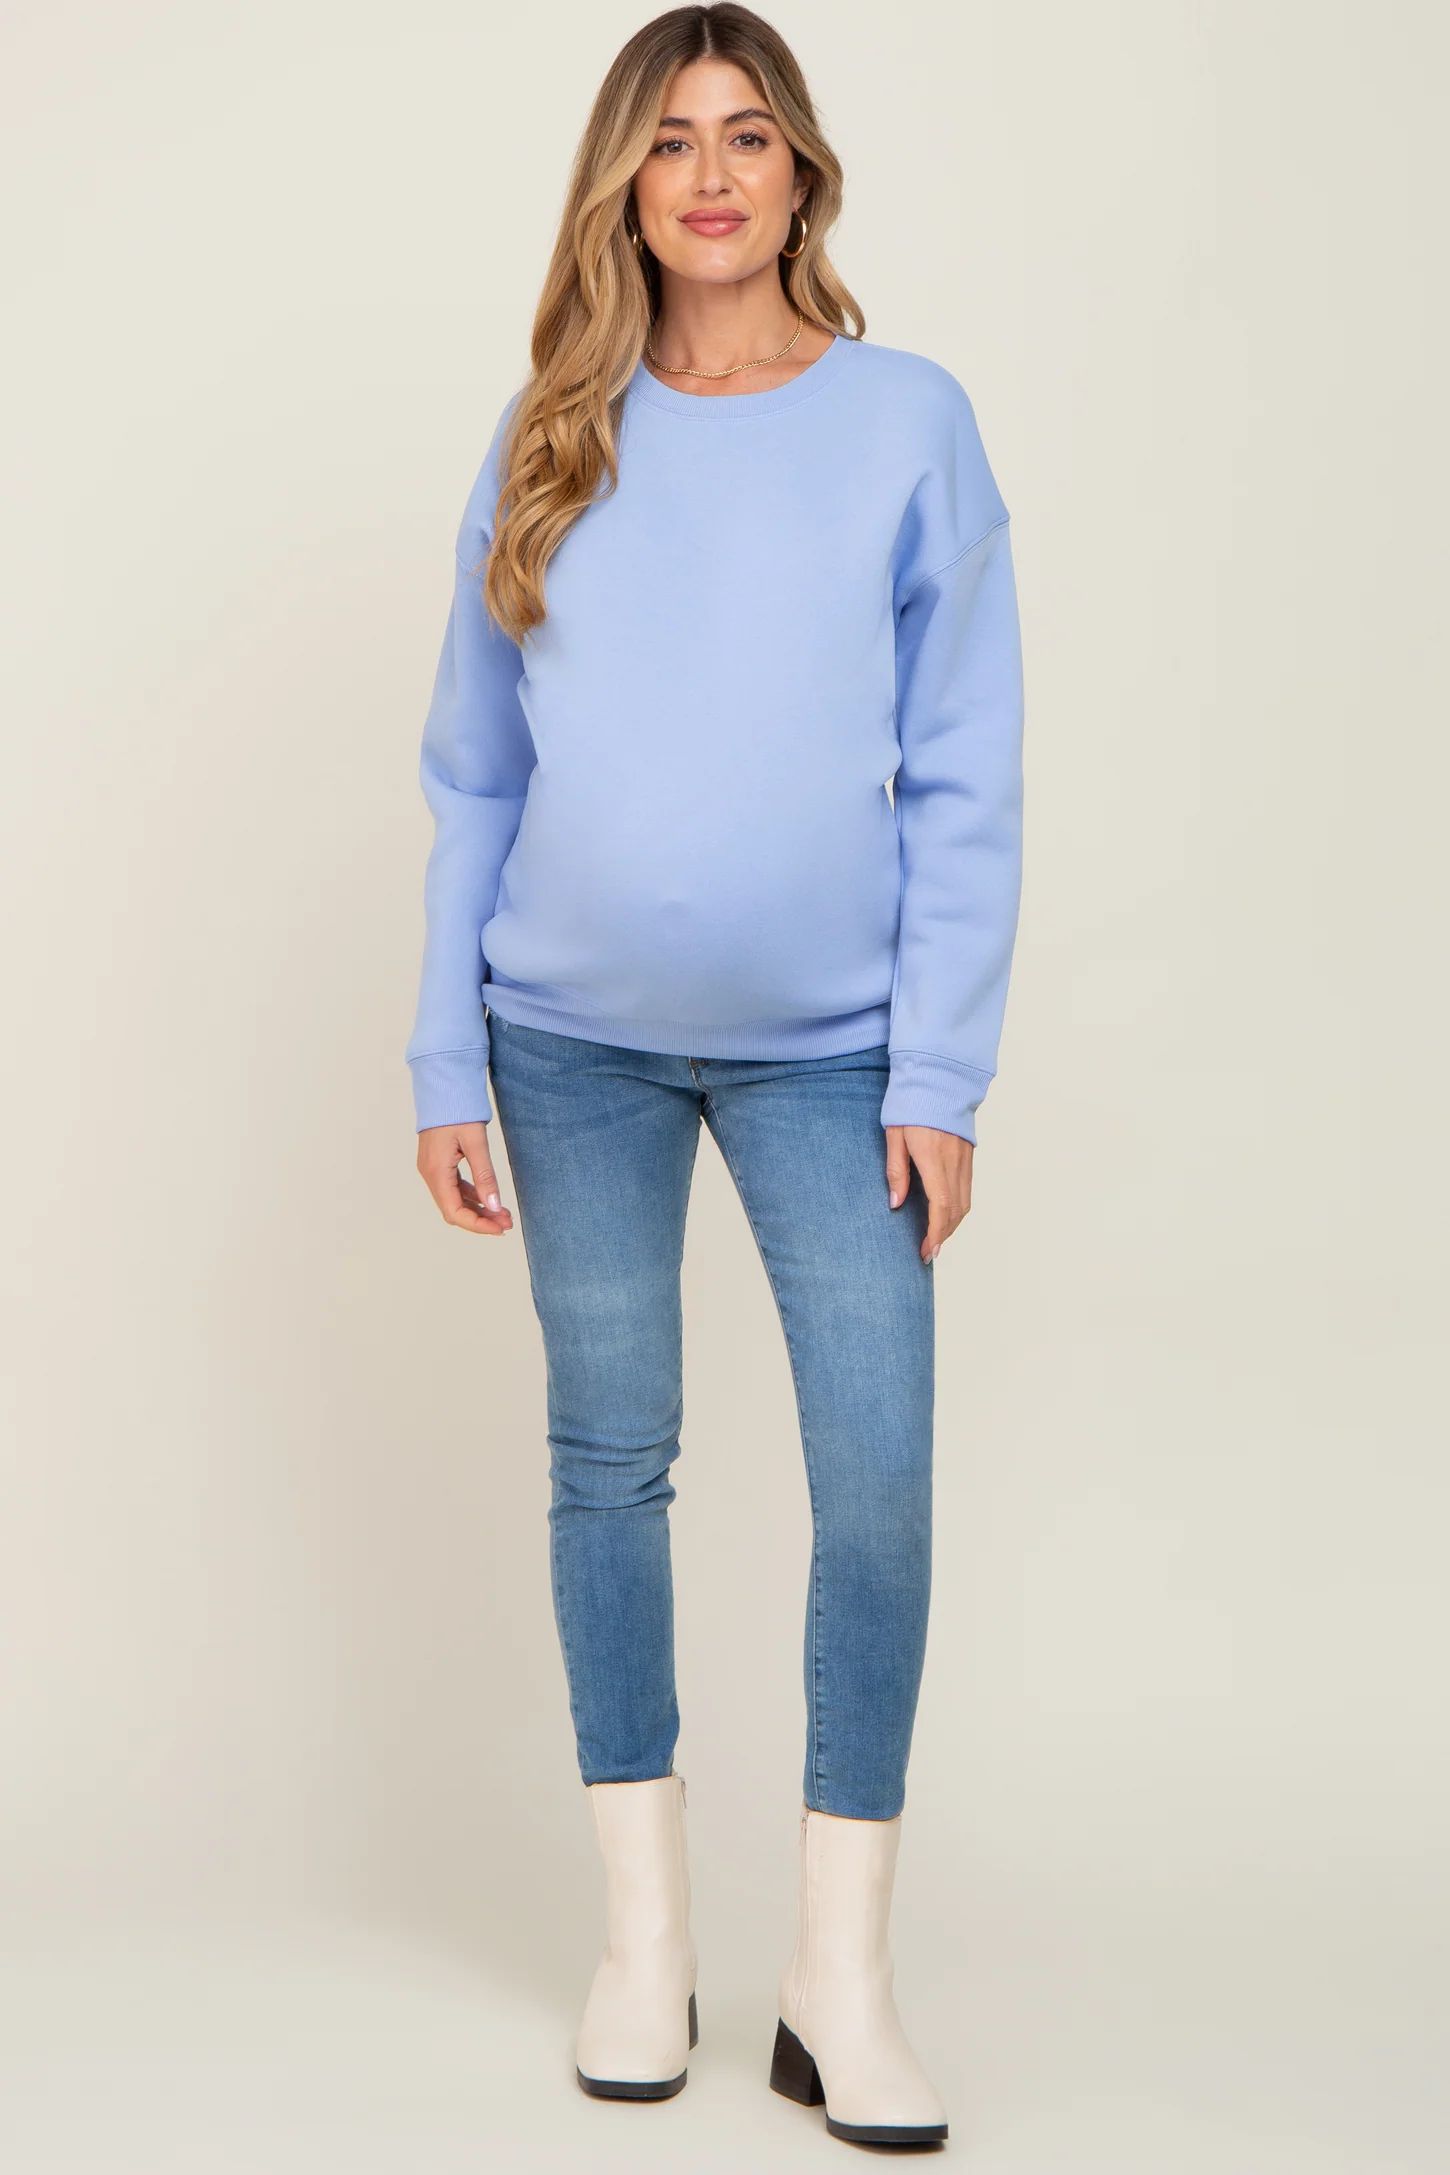 Light Blue Basic Maternity Sweatshirt | PinkBlush Maternity